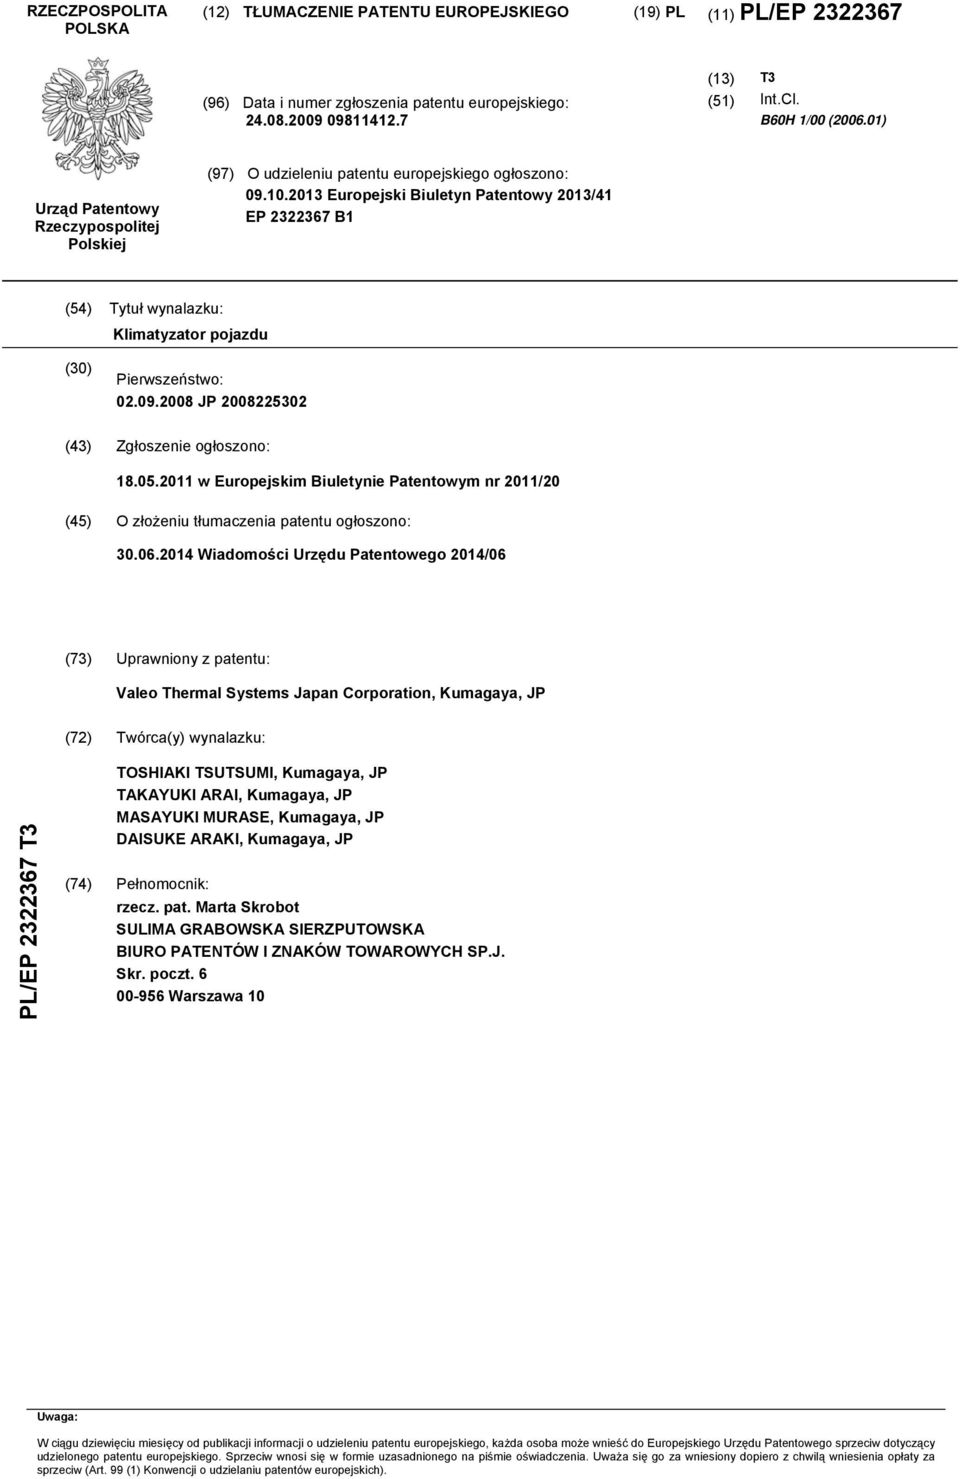 2013 Europejski Biuletyn Patentowy 2013/41 EP 2322367 B1 (4) Tytuł wynalazku: Klimatyzator pojazdu (30) Pierwszeństwo: 02.09.2008 JP 200822302 (43) Zgłoszenie ogłoszono: 18.0.2011 w Europejskim Biuletynie Patentowym nr 2011/20 (4) O złożeniu tłumaczenia patentu ogłoszono: 30.